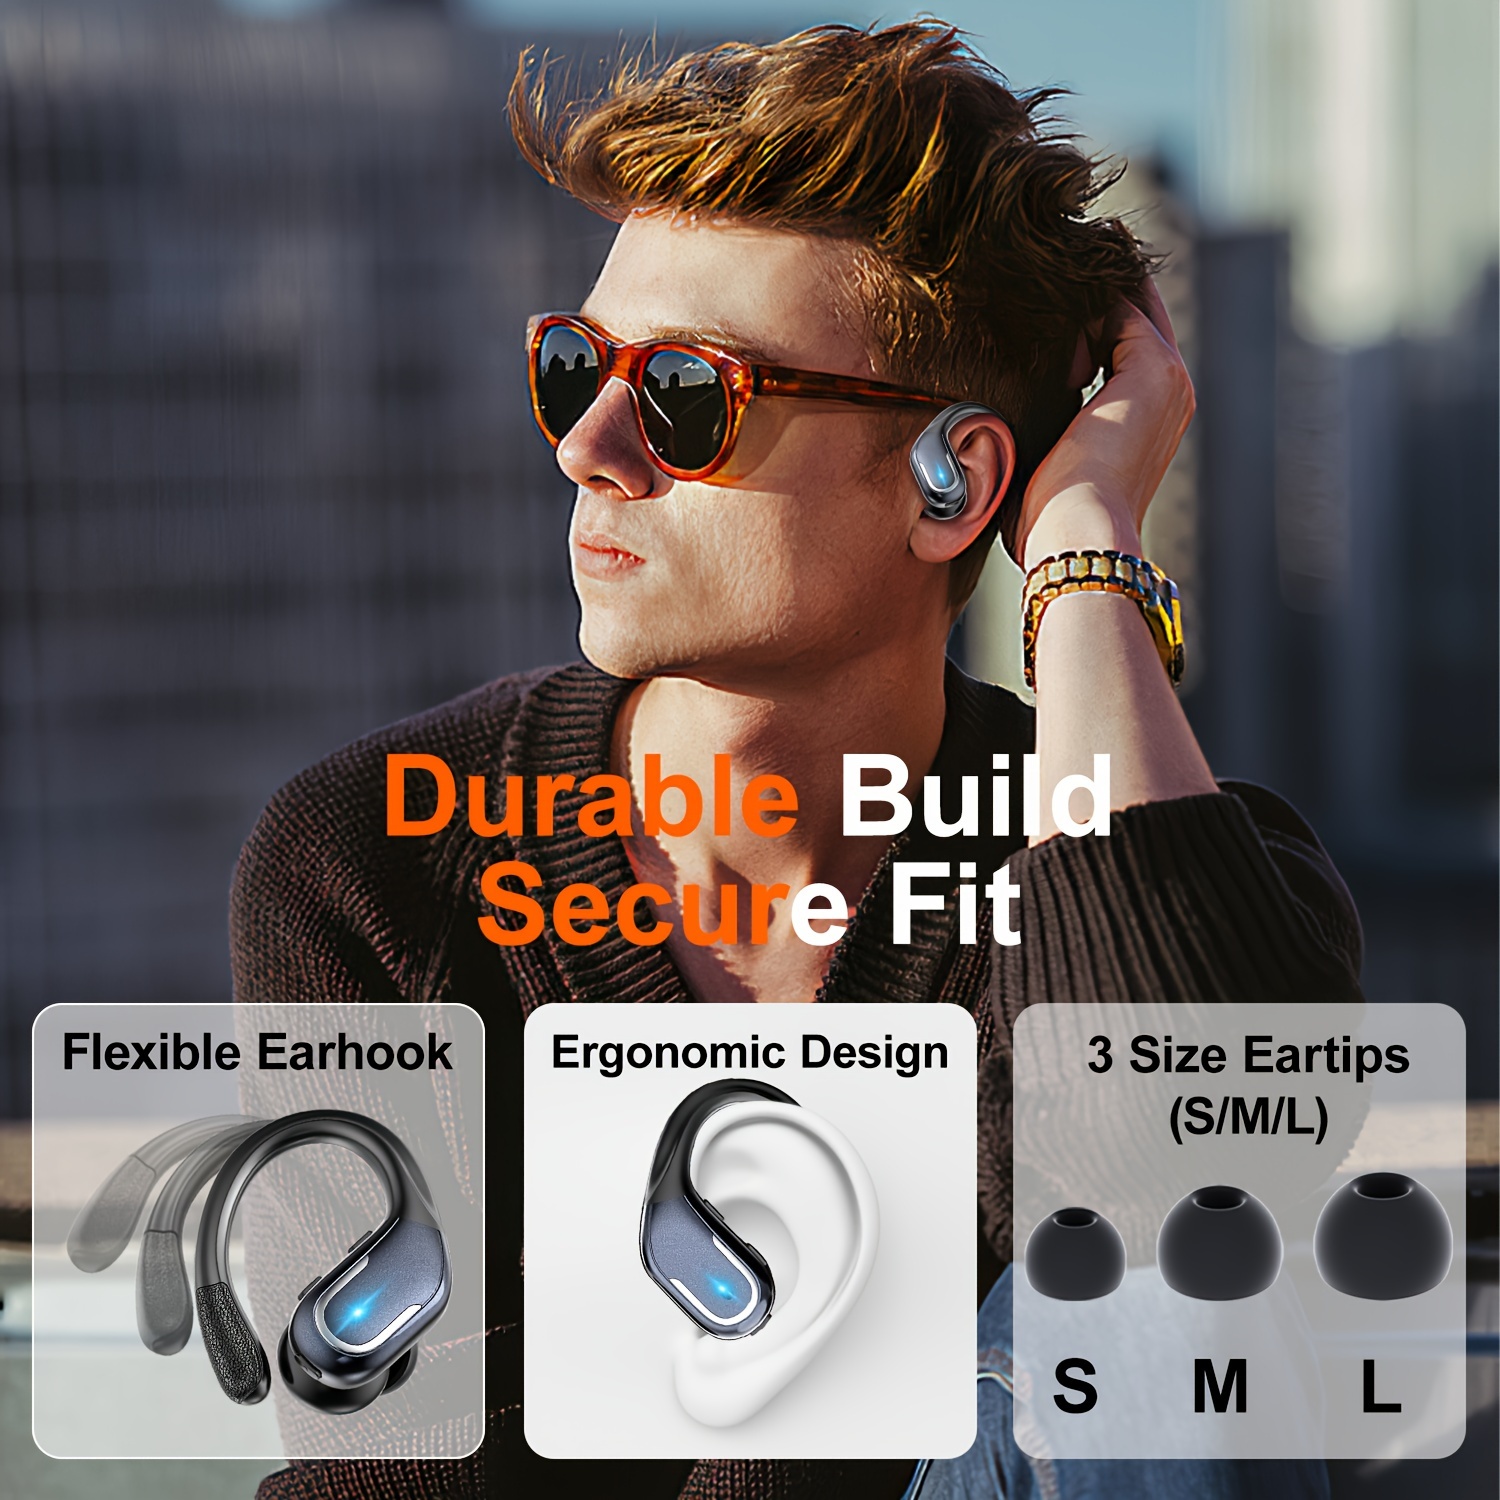 Neue kabellose Ohrhörer für das Laufen, kabellose Kopfhörer mit Ohrbügeln für satten Bassklang, 60 Stunden Over-Ear-Kopfhörer mit Dual-LED-Display, wasserdichte Ohrhörer IPX7 mit eingebautem Mikrofon, Geräuschunterdrückendes Headset